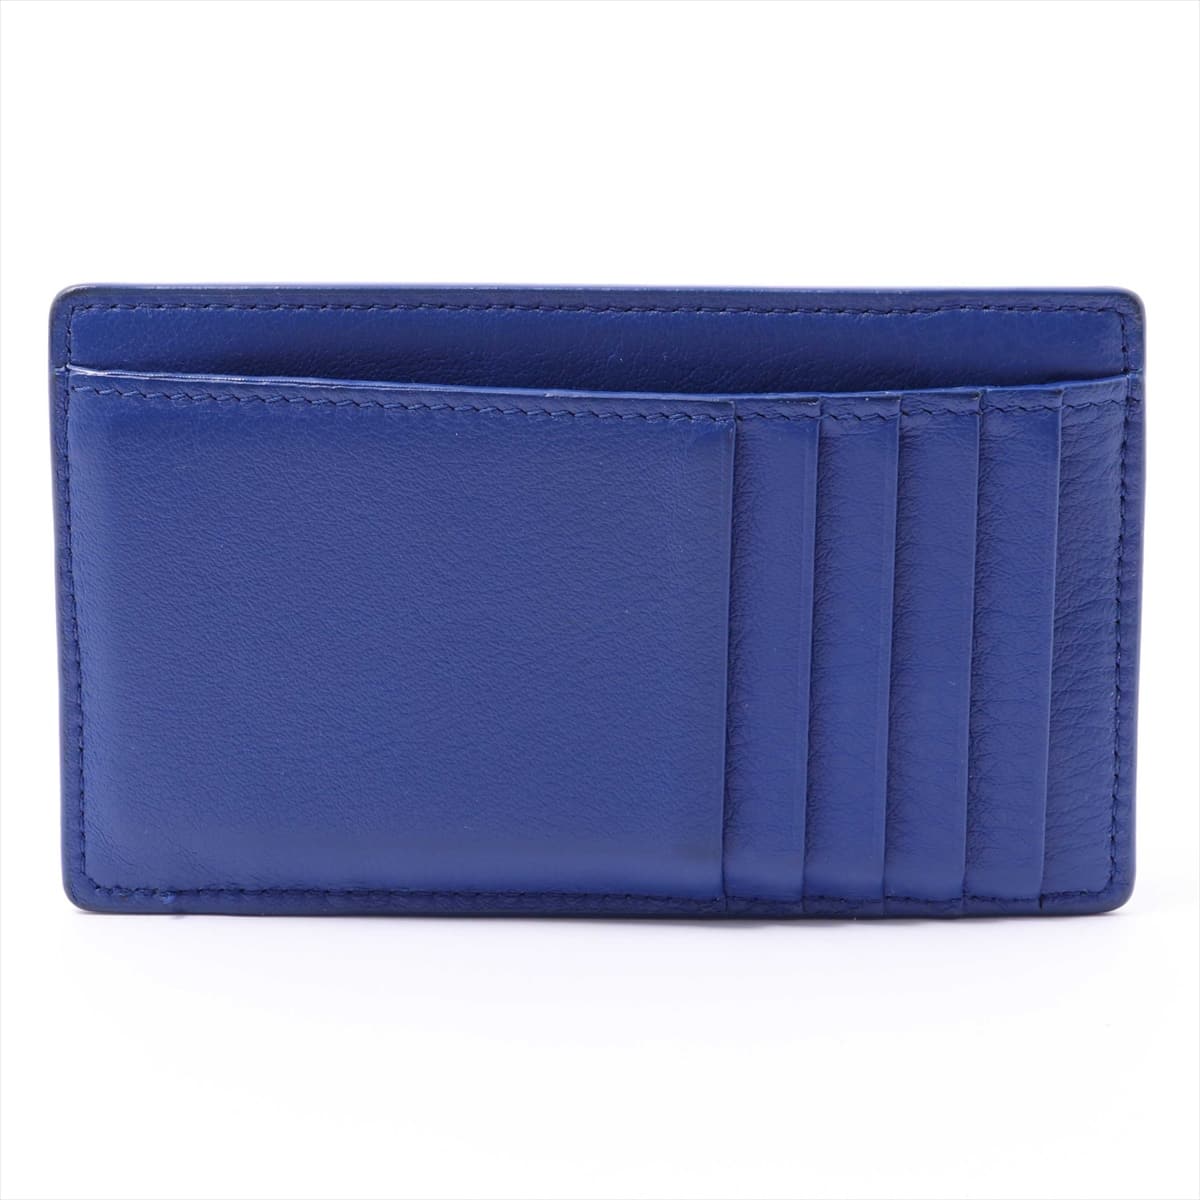 Balenciaga Leather Coin case Blue 499208 DLQ0N 4130